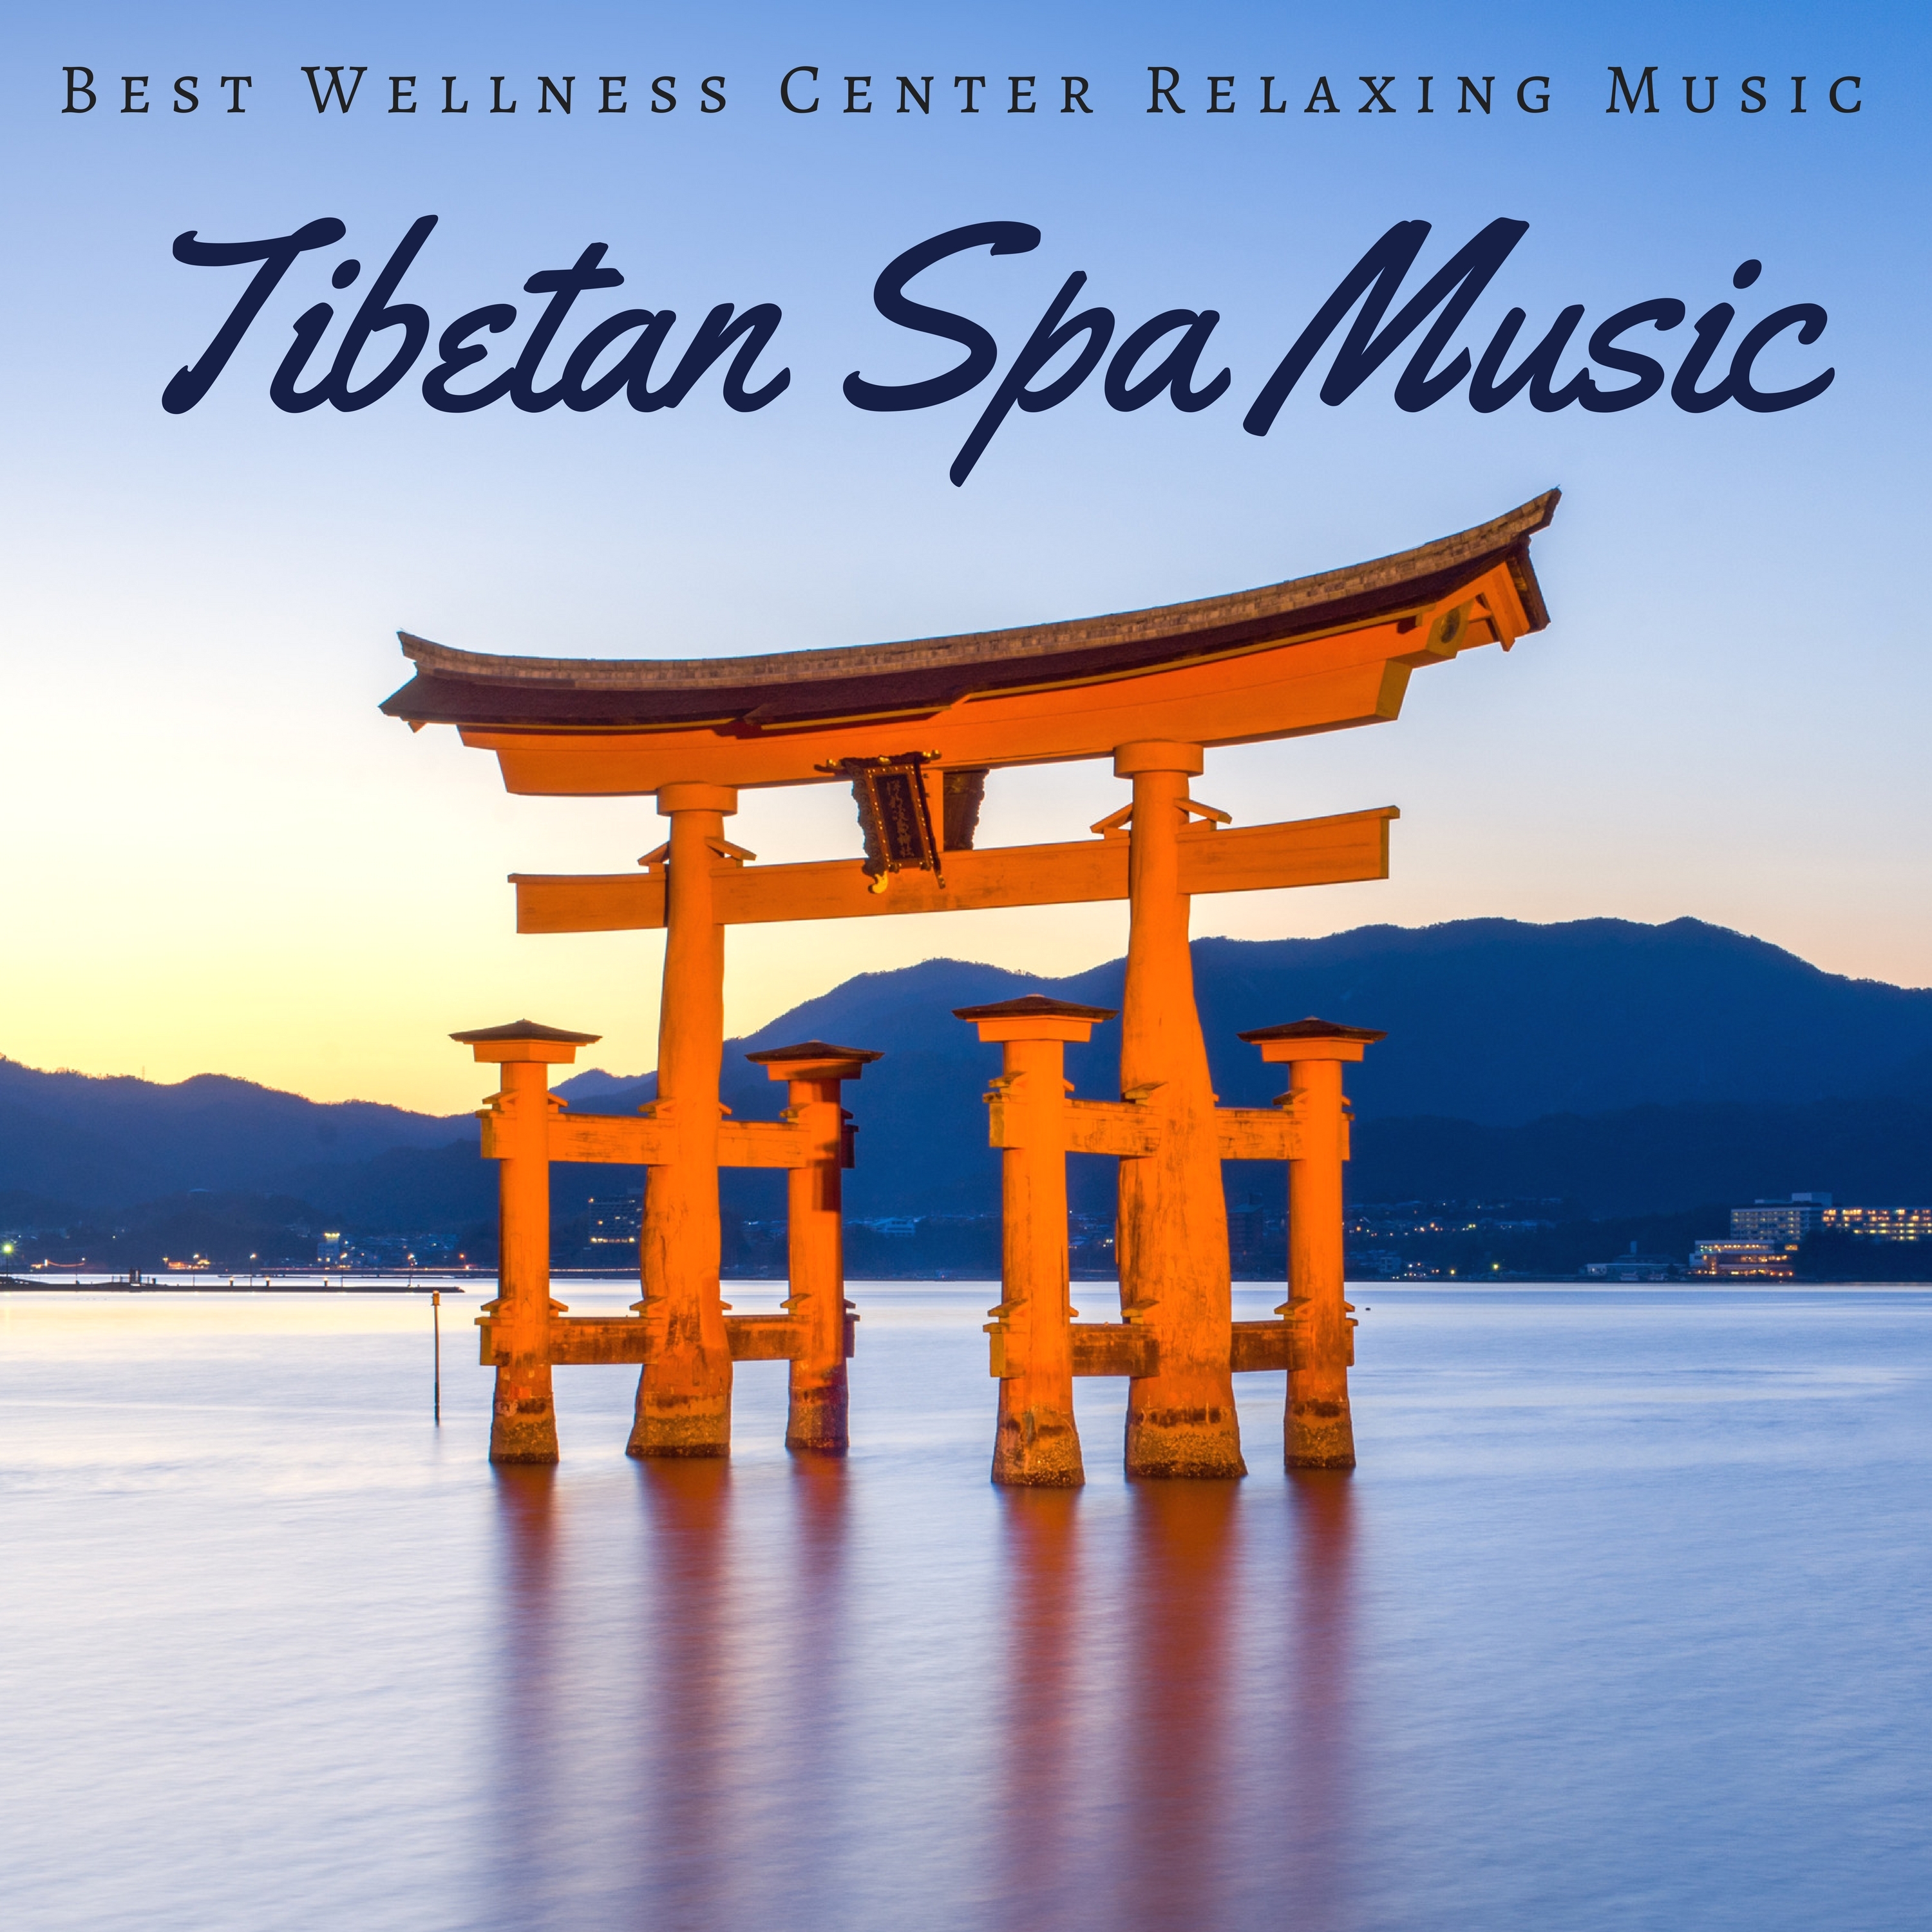 Tibetan Spa Music - Best Wellness Center Relaxing Music Collection for Spa, Hammam, Sauna